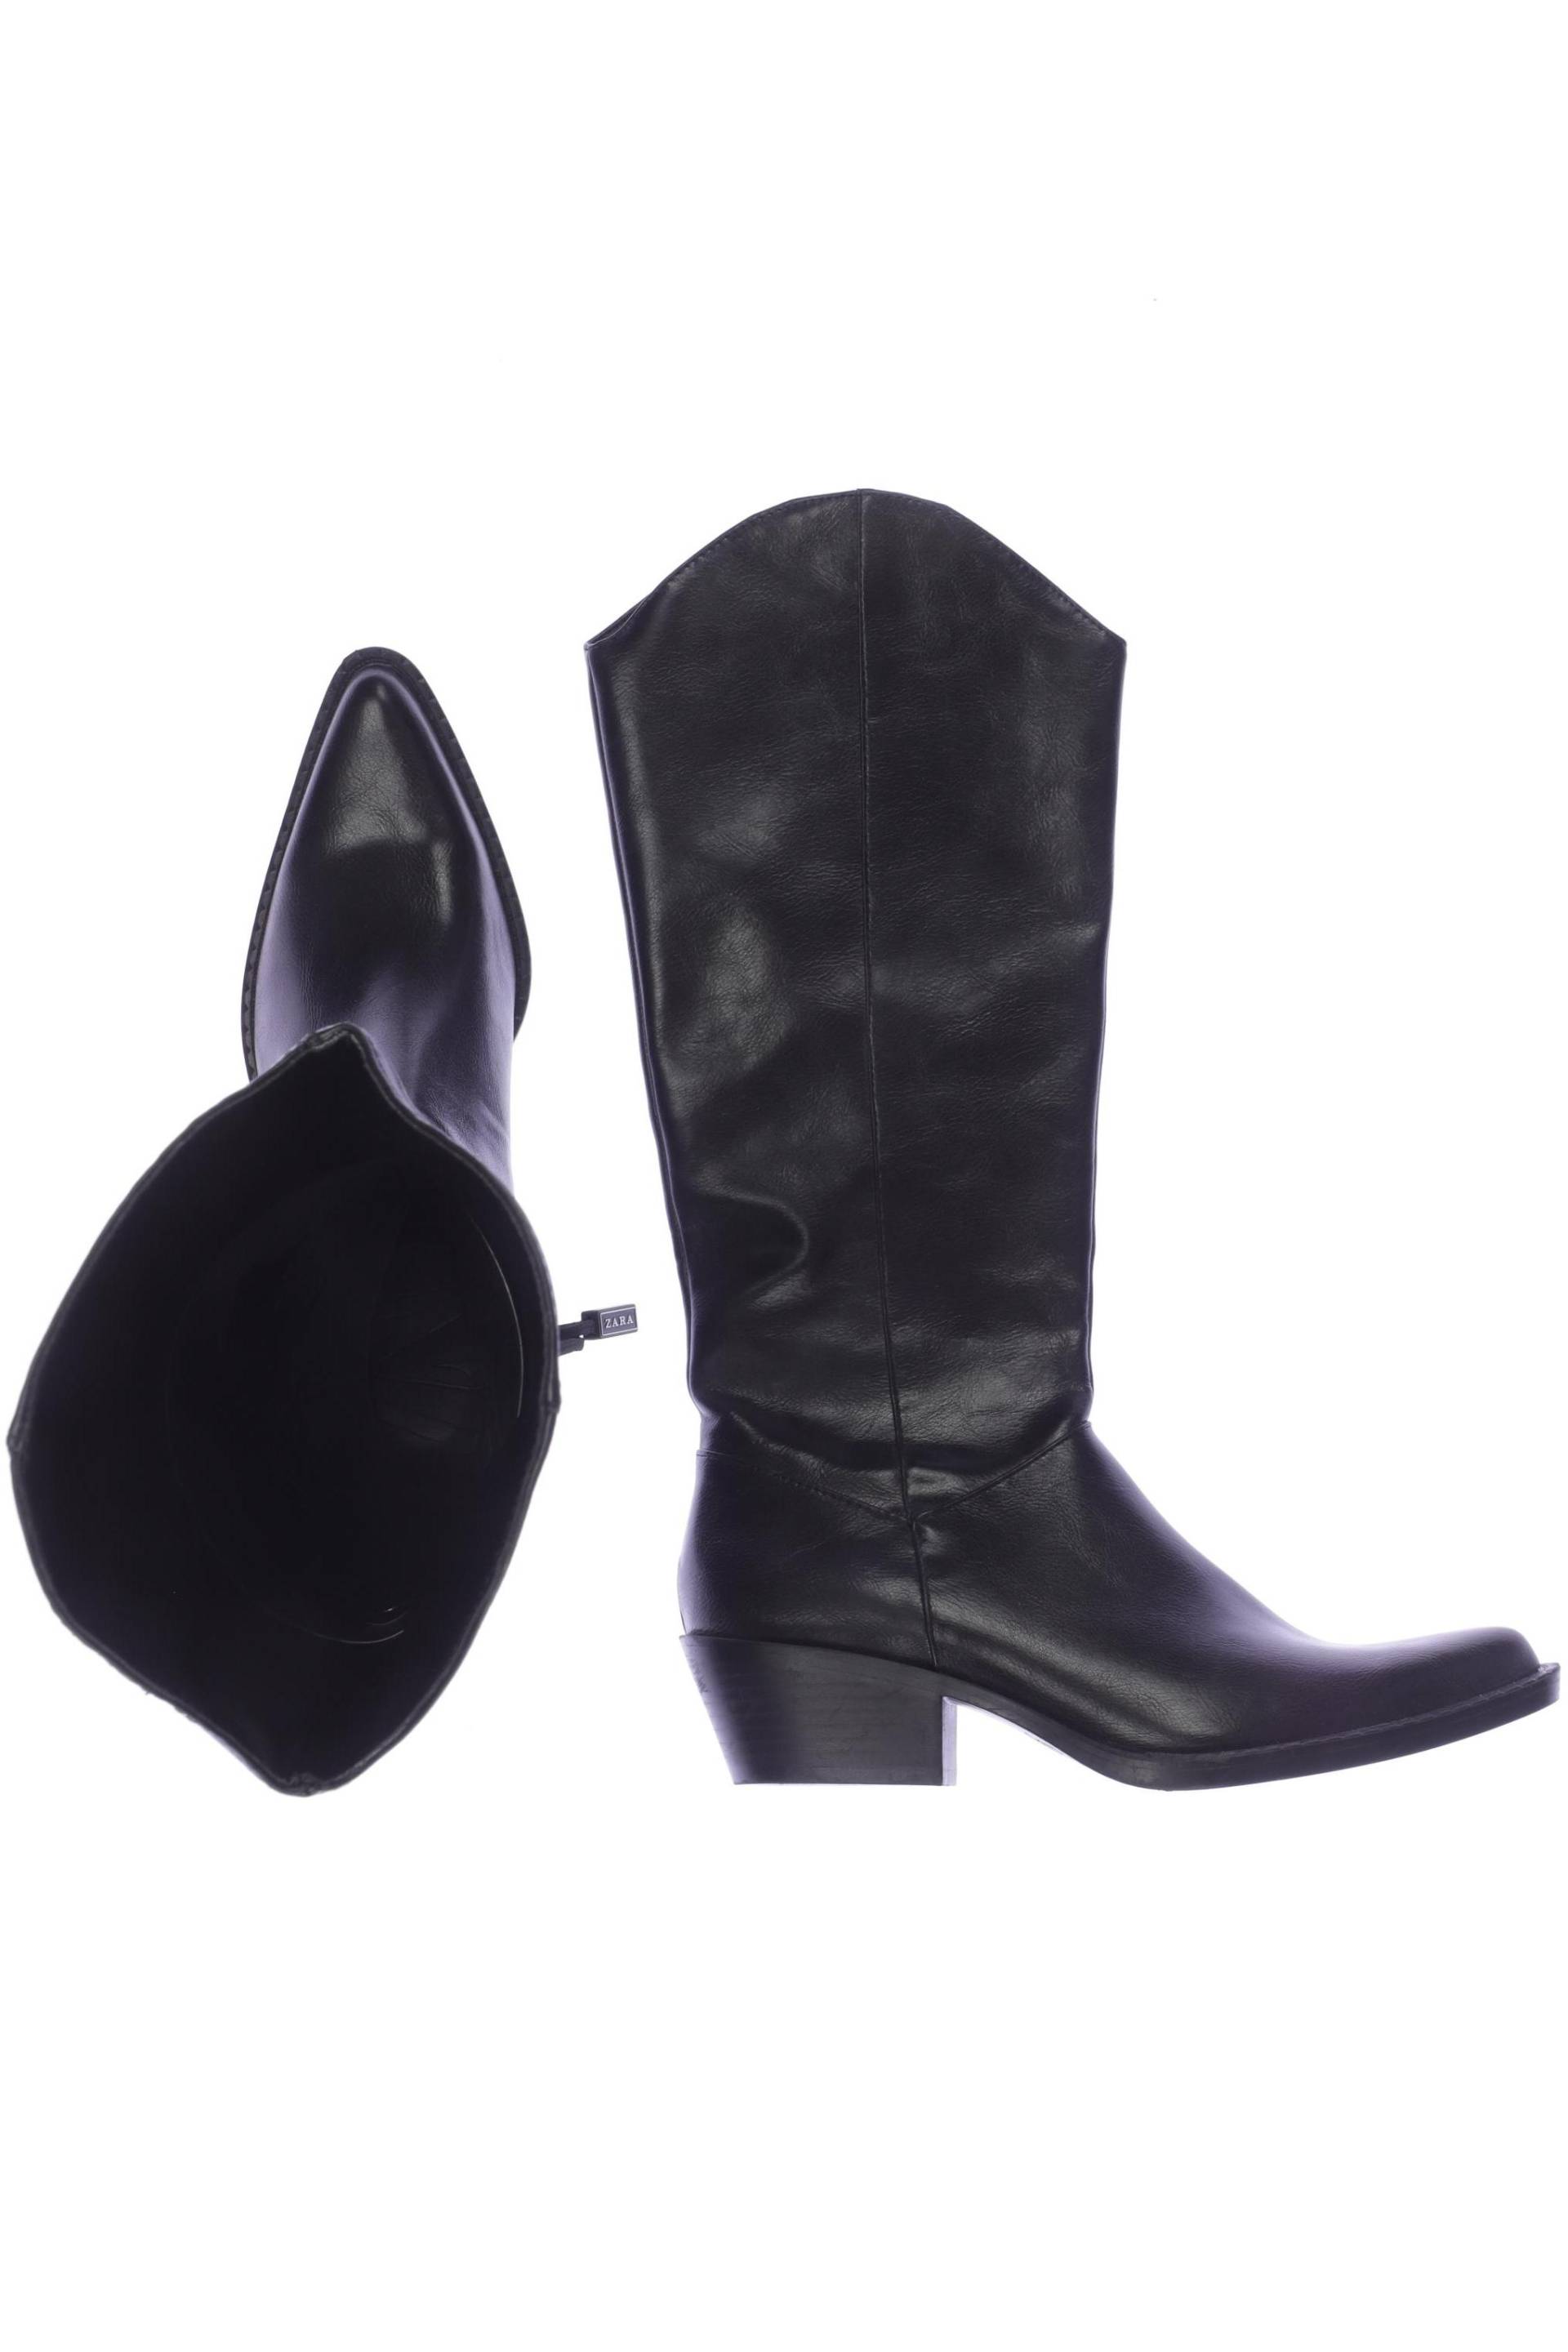 Zara Damen Stiefel, schwarz, Gr. 37 von ZARA